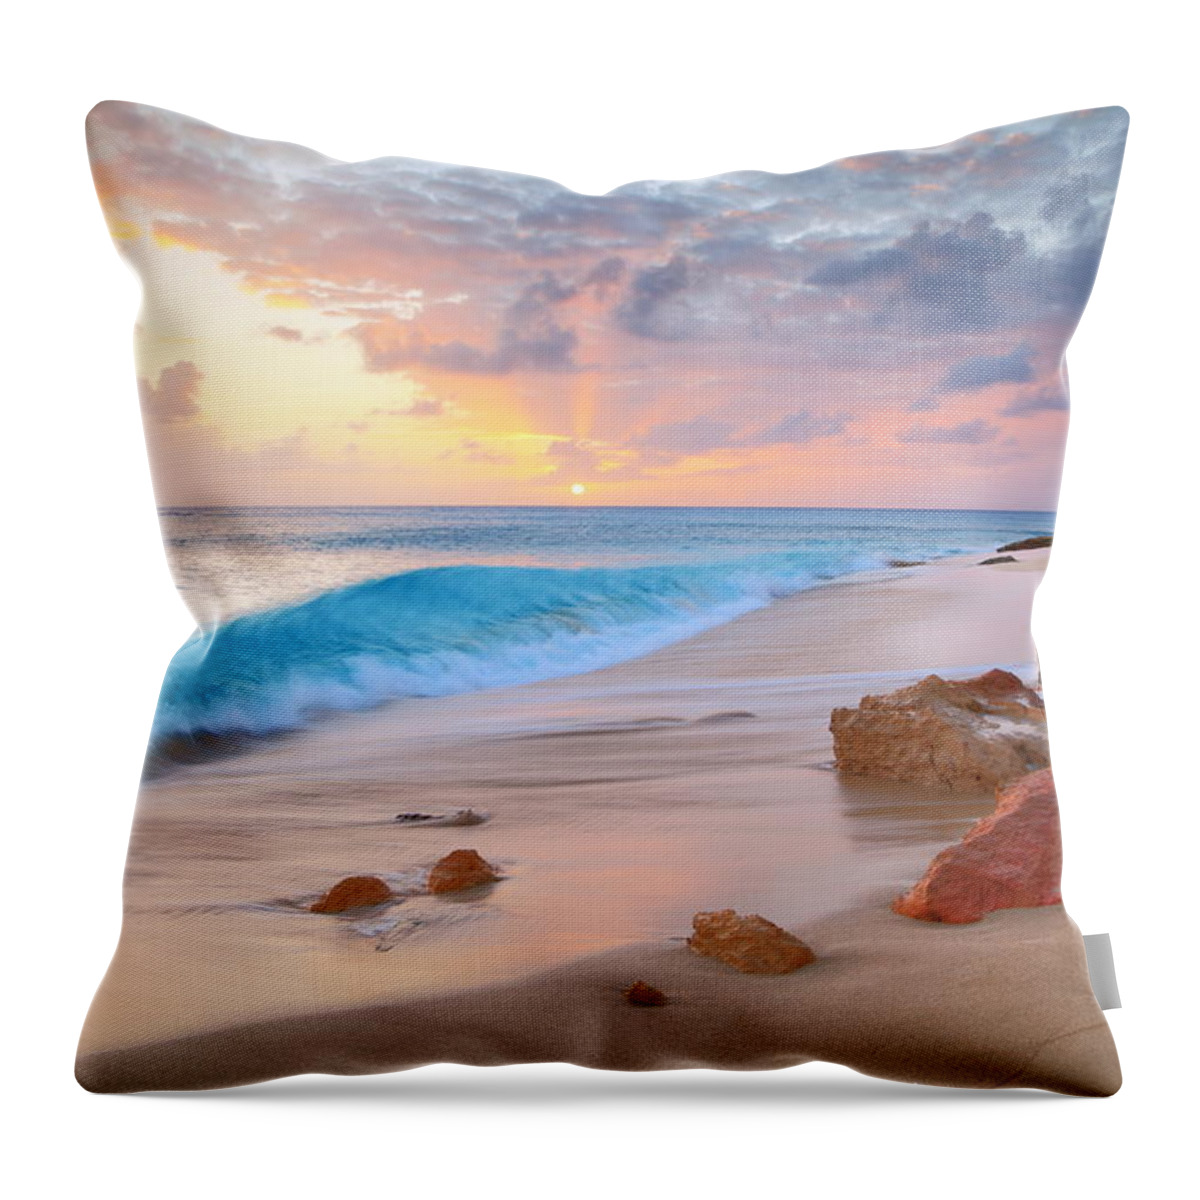 Beach Throw Pillow featuring the photograph Cupecoy Beach Sunset Saint Maarten by Roupen Baker